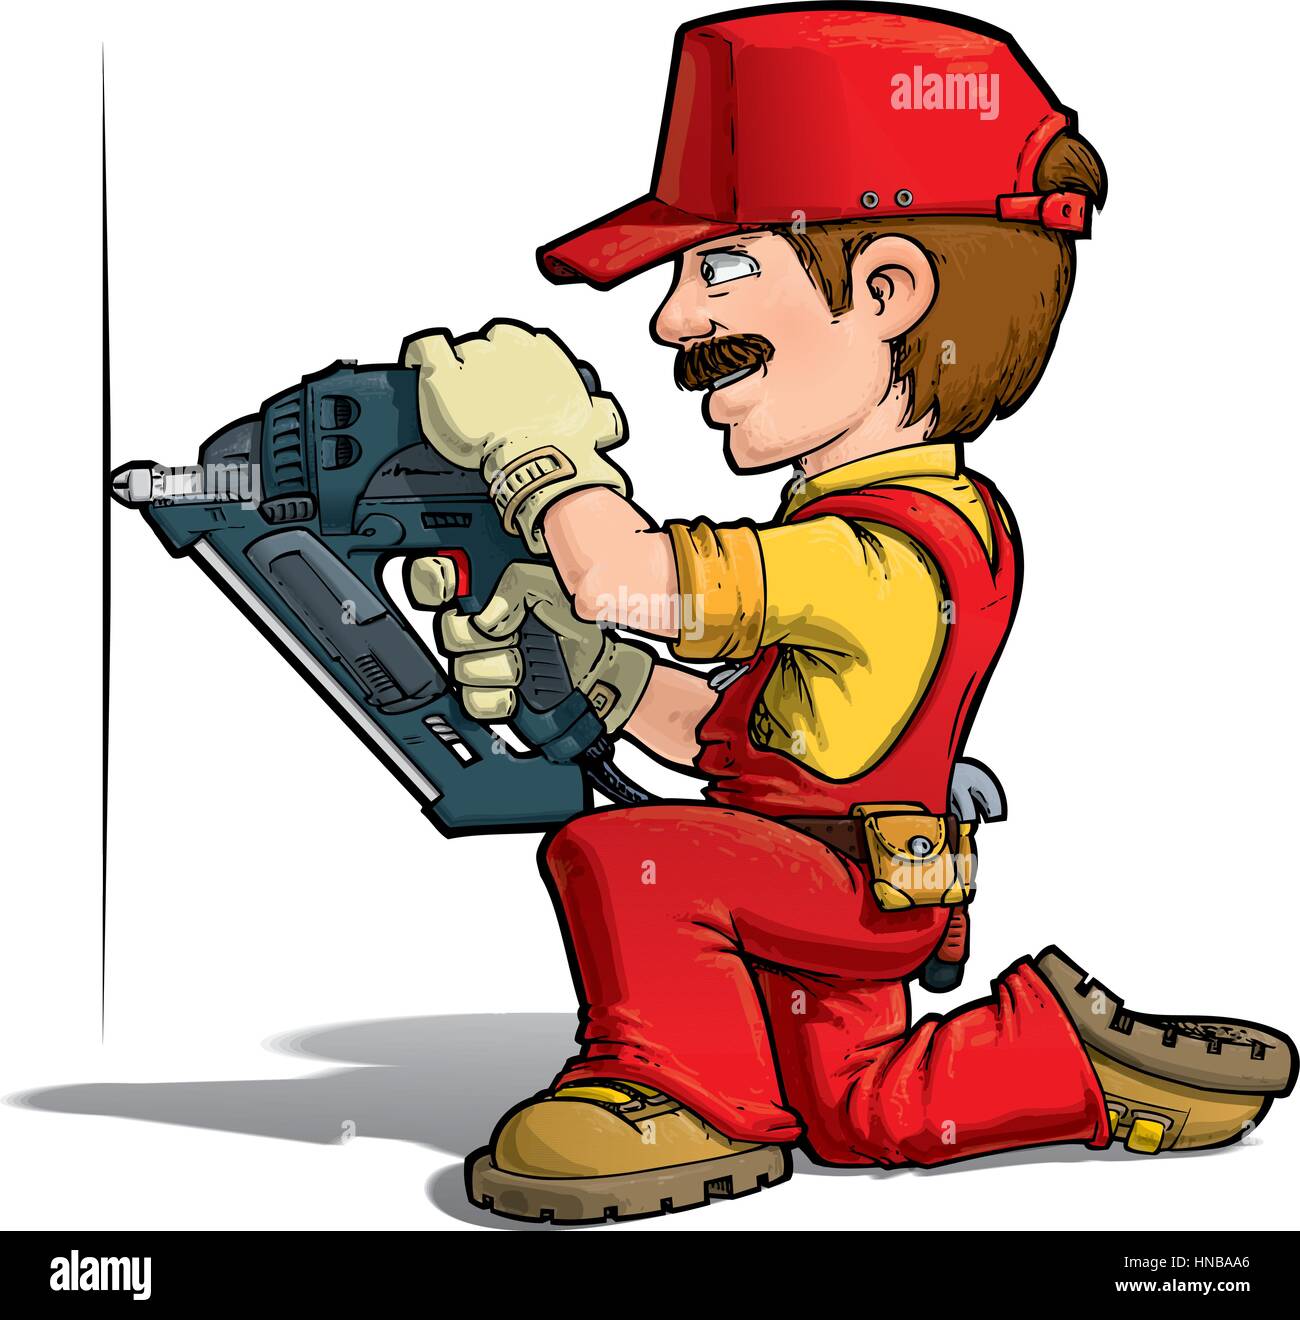 Cartoon illustration of a handyman nailing with a nail-gun. Stock Vector